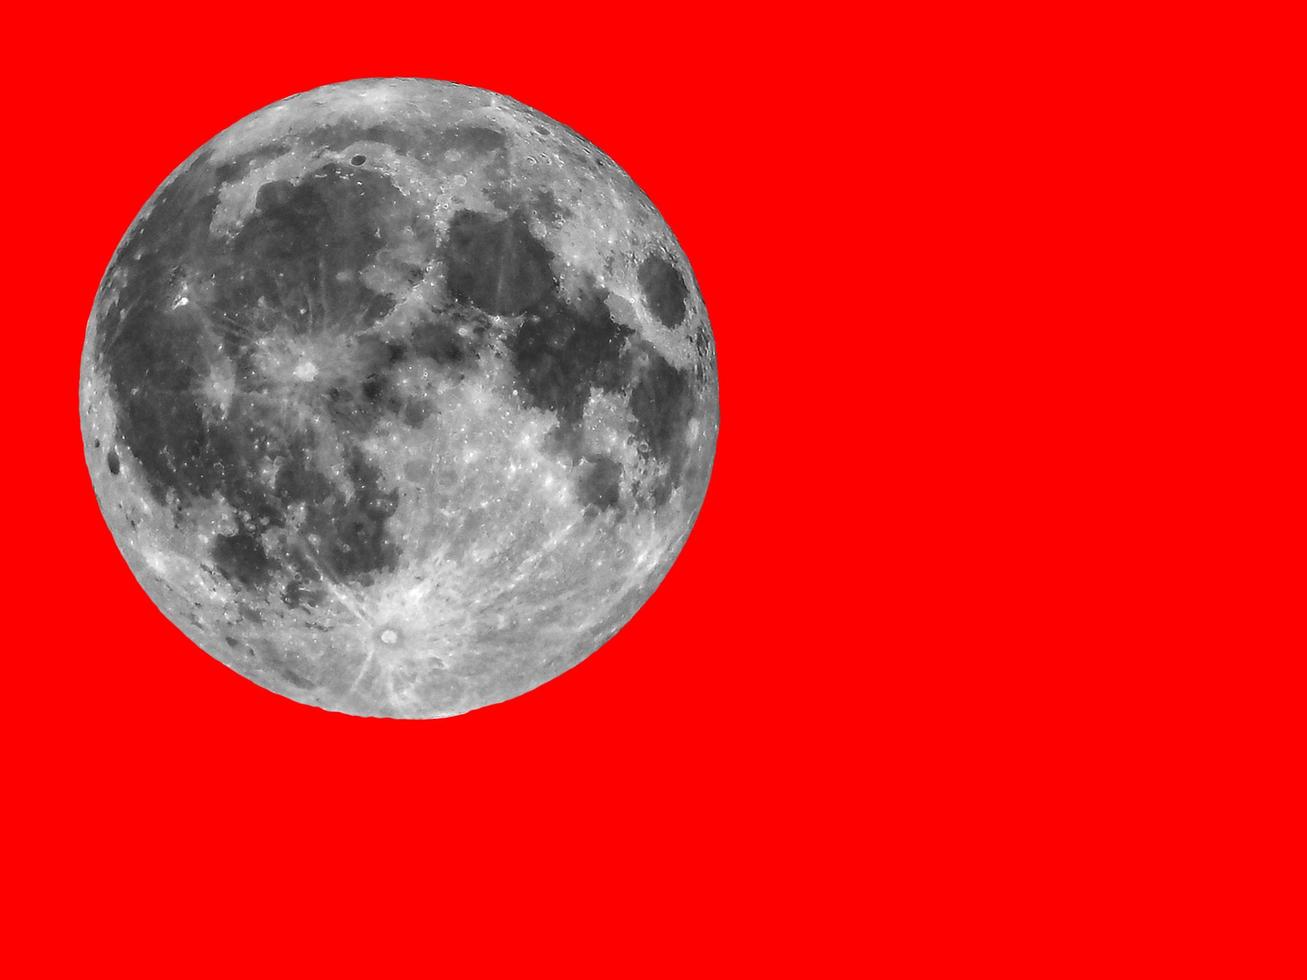 volle maan gezien met telescoop, rode achtergrond foto